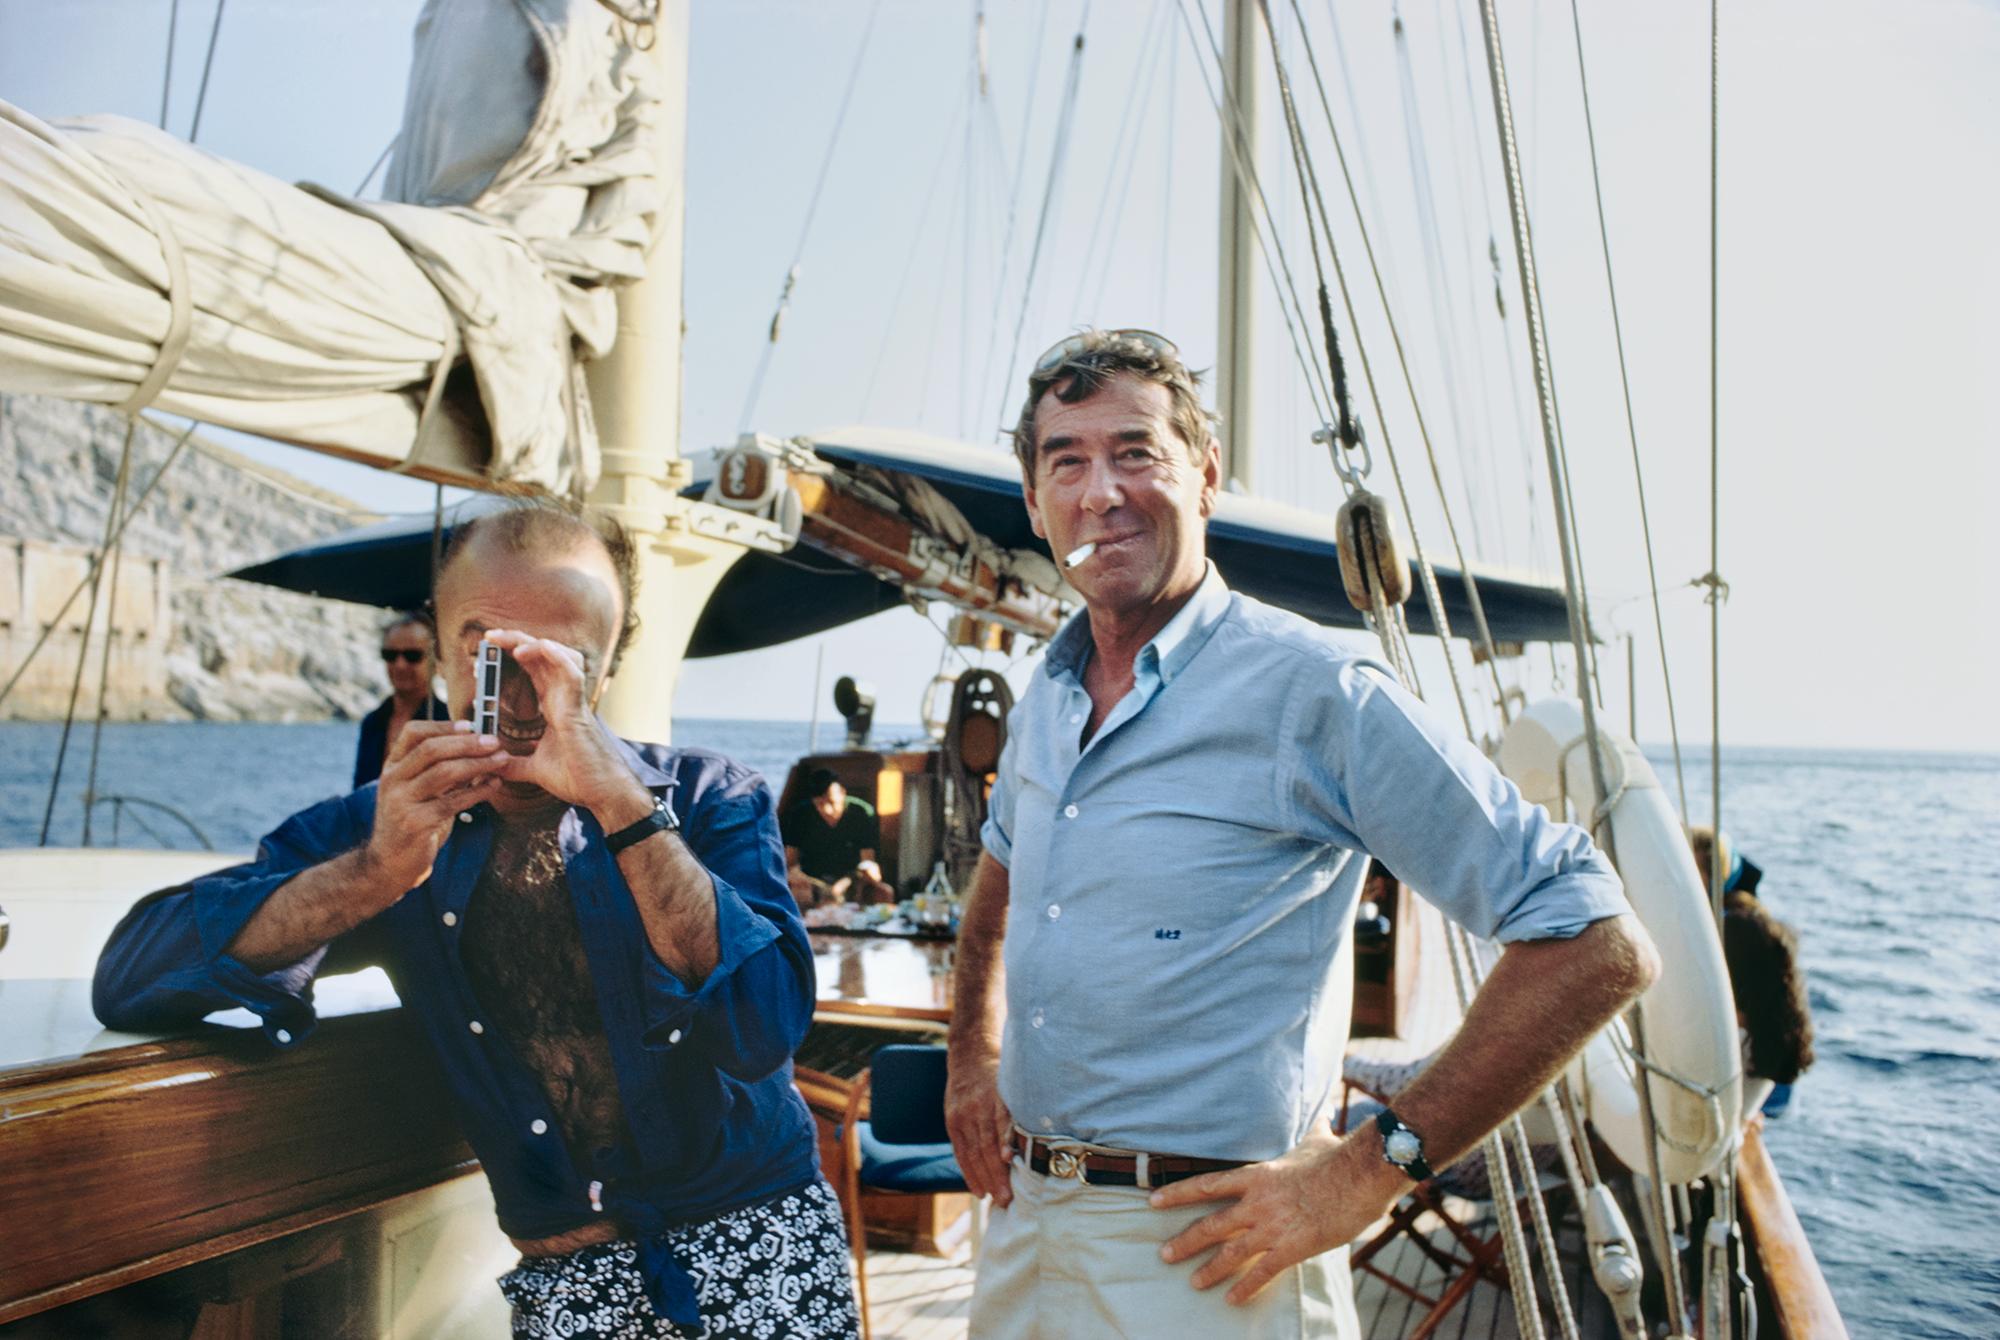 Le photographe Slim Aarons (à droite) à bord d'un yacht au large de Capri, en Italie, en septembre 1968.

Slim Aarons Estate Edition, certificat d'authenticité inclus.
Numéroté et tamponné par la succession Slim Aarons
Le collectionneur recevra le